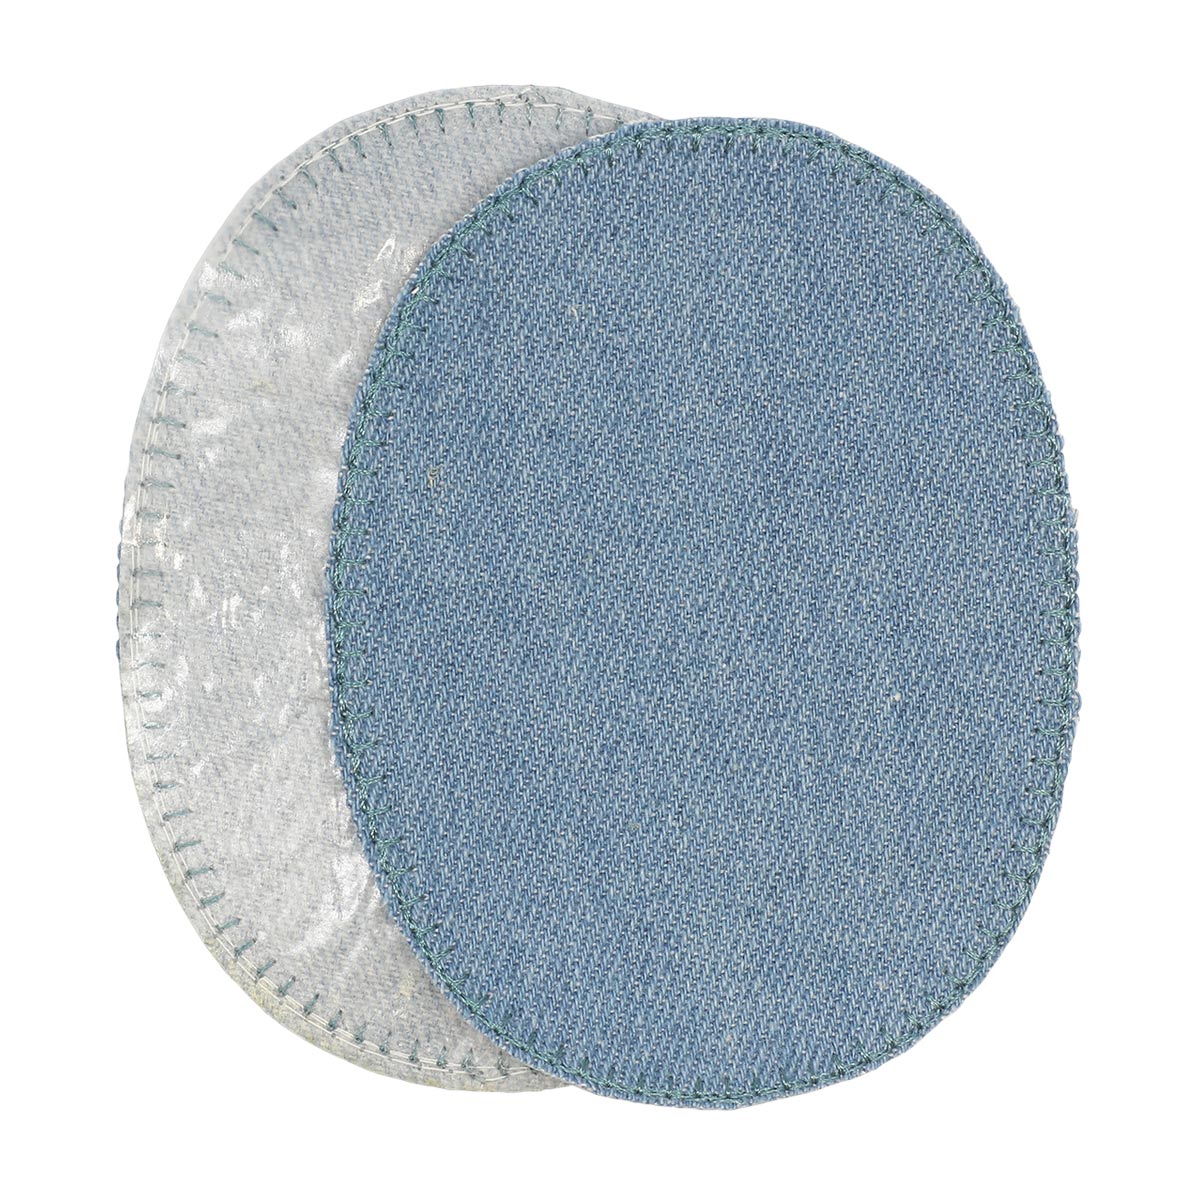 Заплатка Prym термоклеевая из джинсовой ткани деним для уплотнения ткани 8х11 см голубой 929295 - фото 4